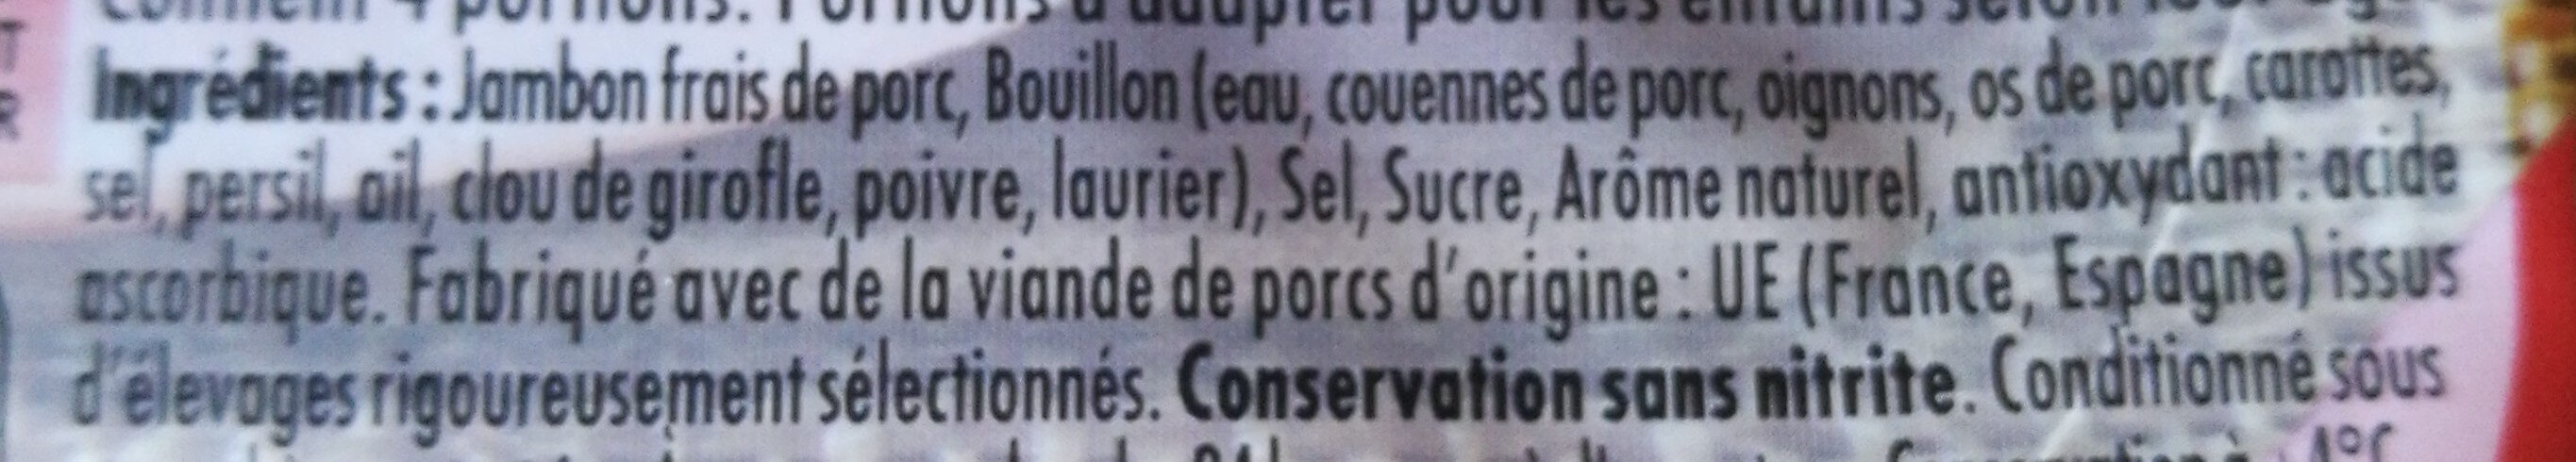 Le Bon Paris Au Torchon conservation Sans Nitrite - Ingrediënten - fr